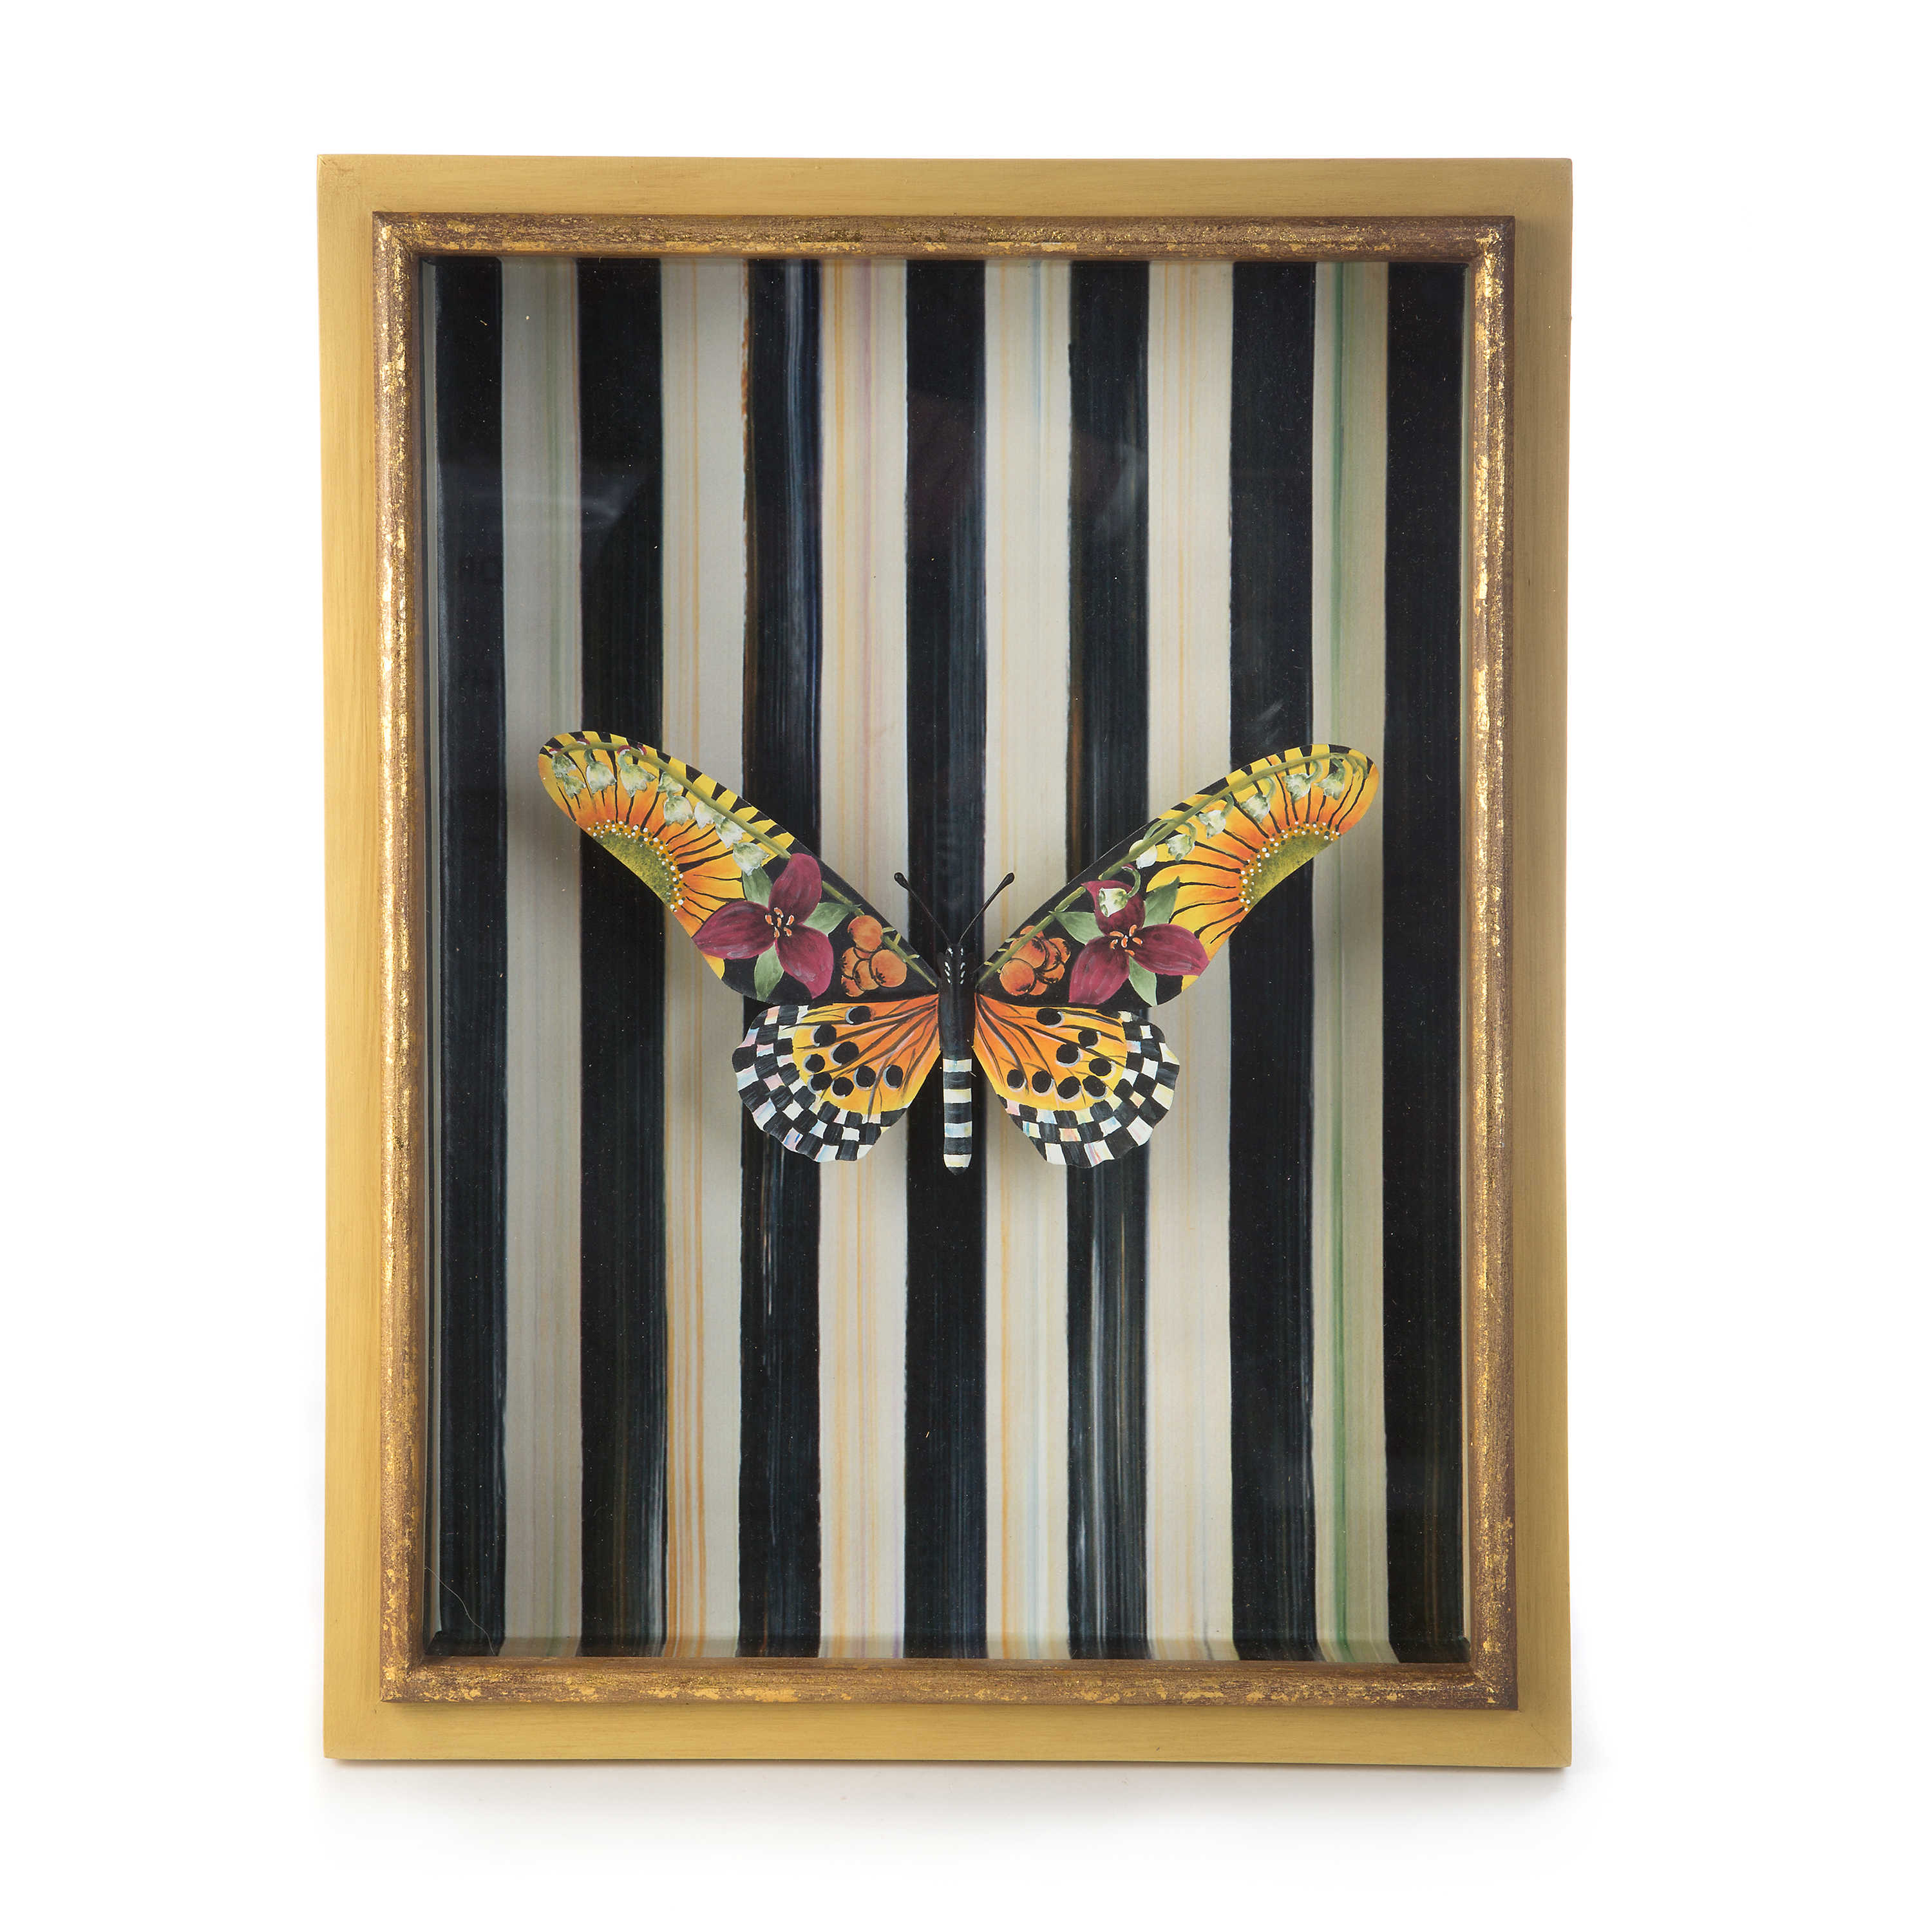 Monarch Butterfly Shadow Box mackenzie-childs Panama 0